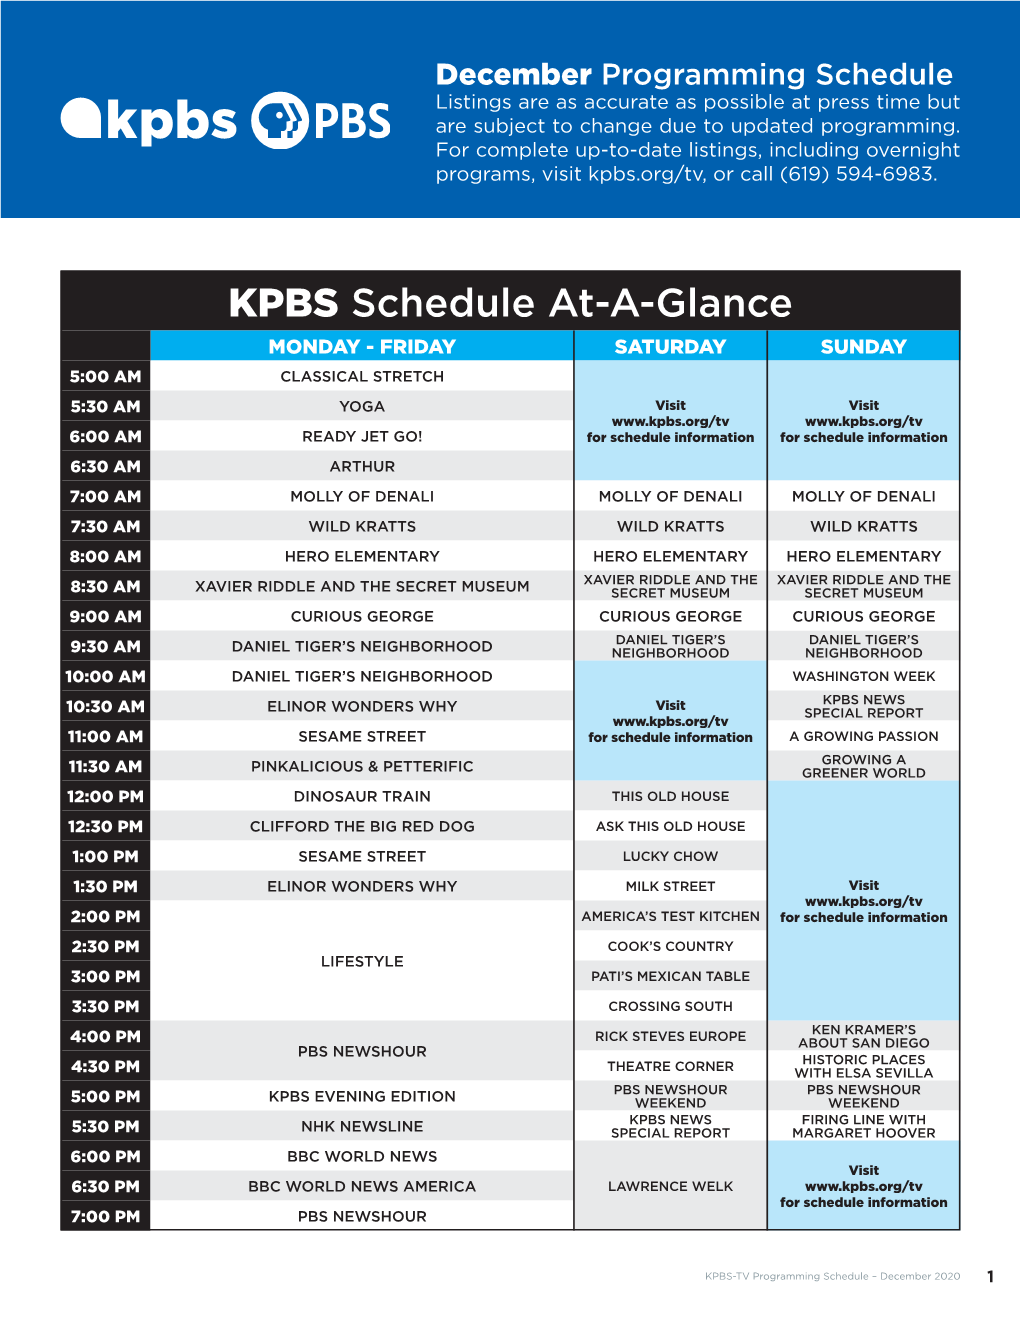 KPBS-TV Lisitings